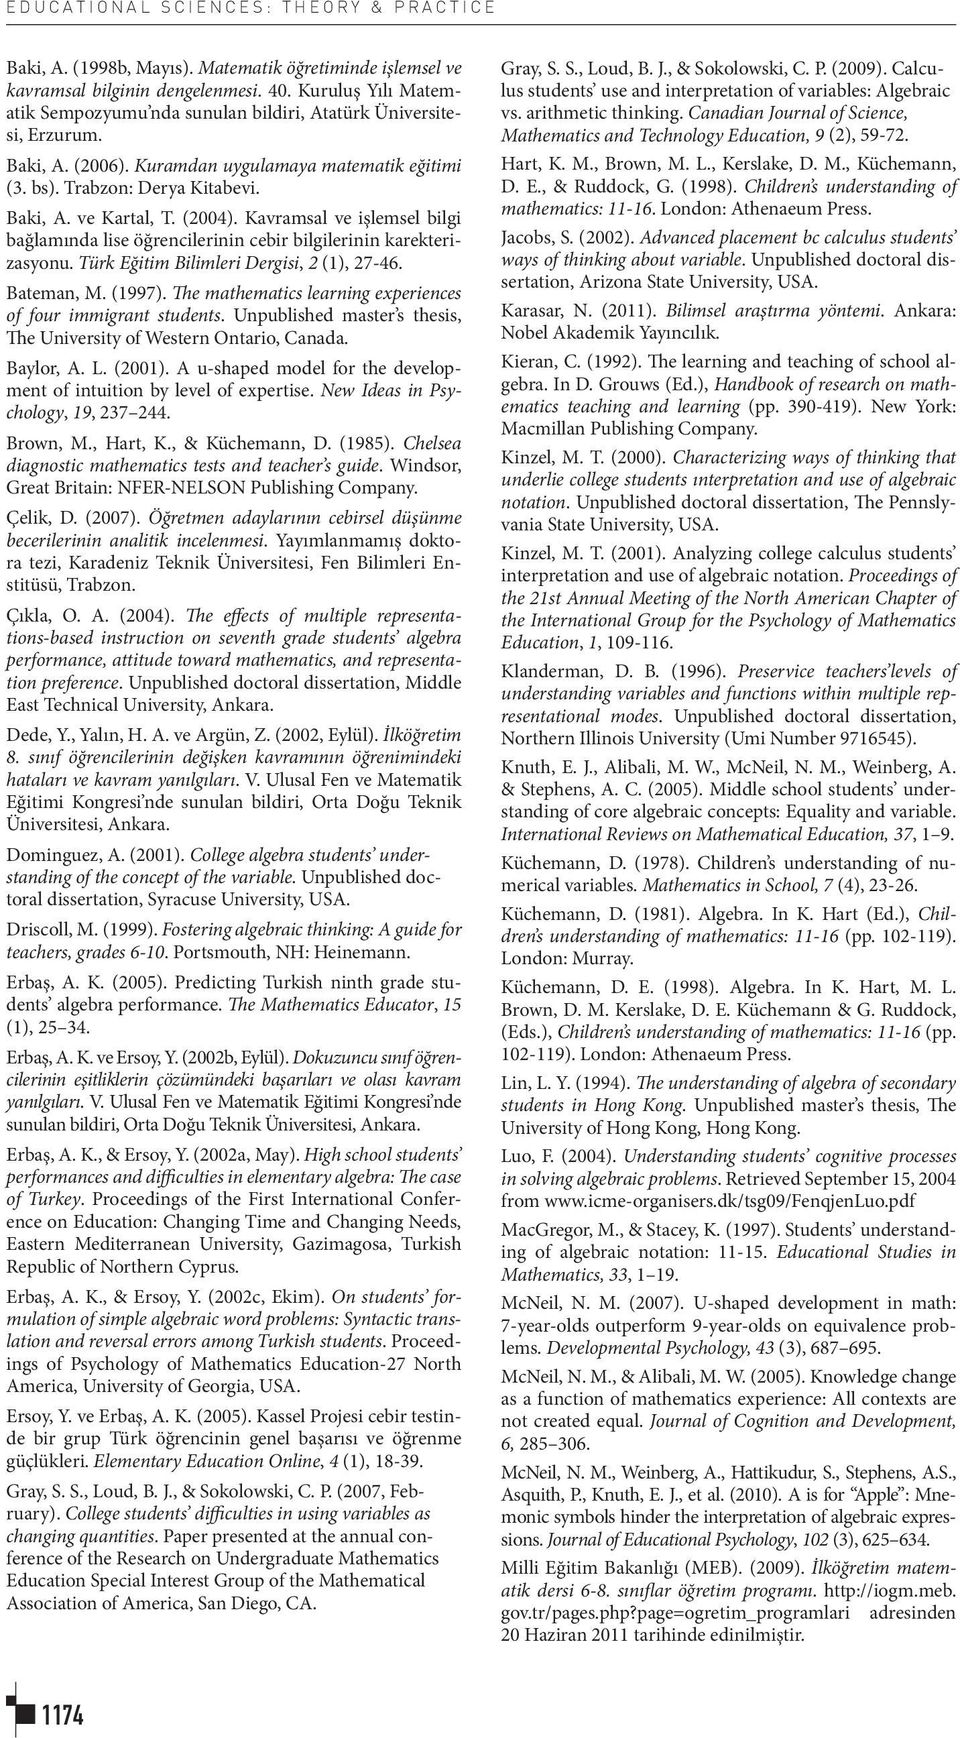 (2004). Kavramsal ve işlemsel bilgi bağlamında lise öğrencilerinin cebir bilgilerinin karekterizasyonu. Türk Eğitim Bilimleri Dergisi, 2 (1), 27-46. Bateman, M. (1997).